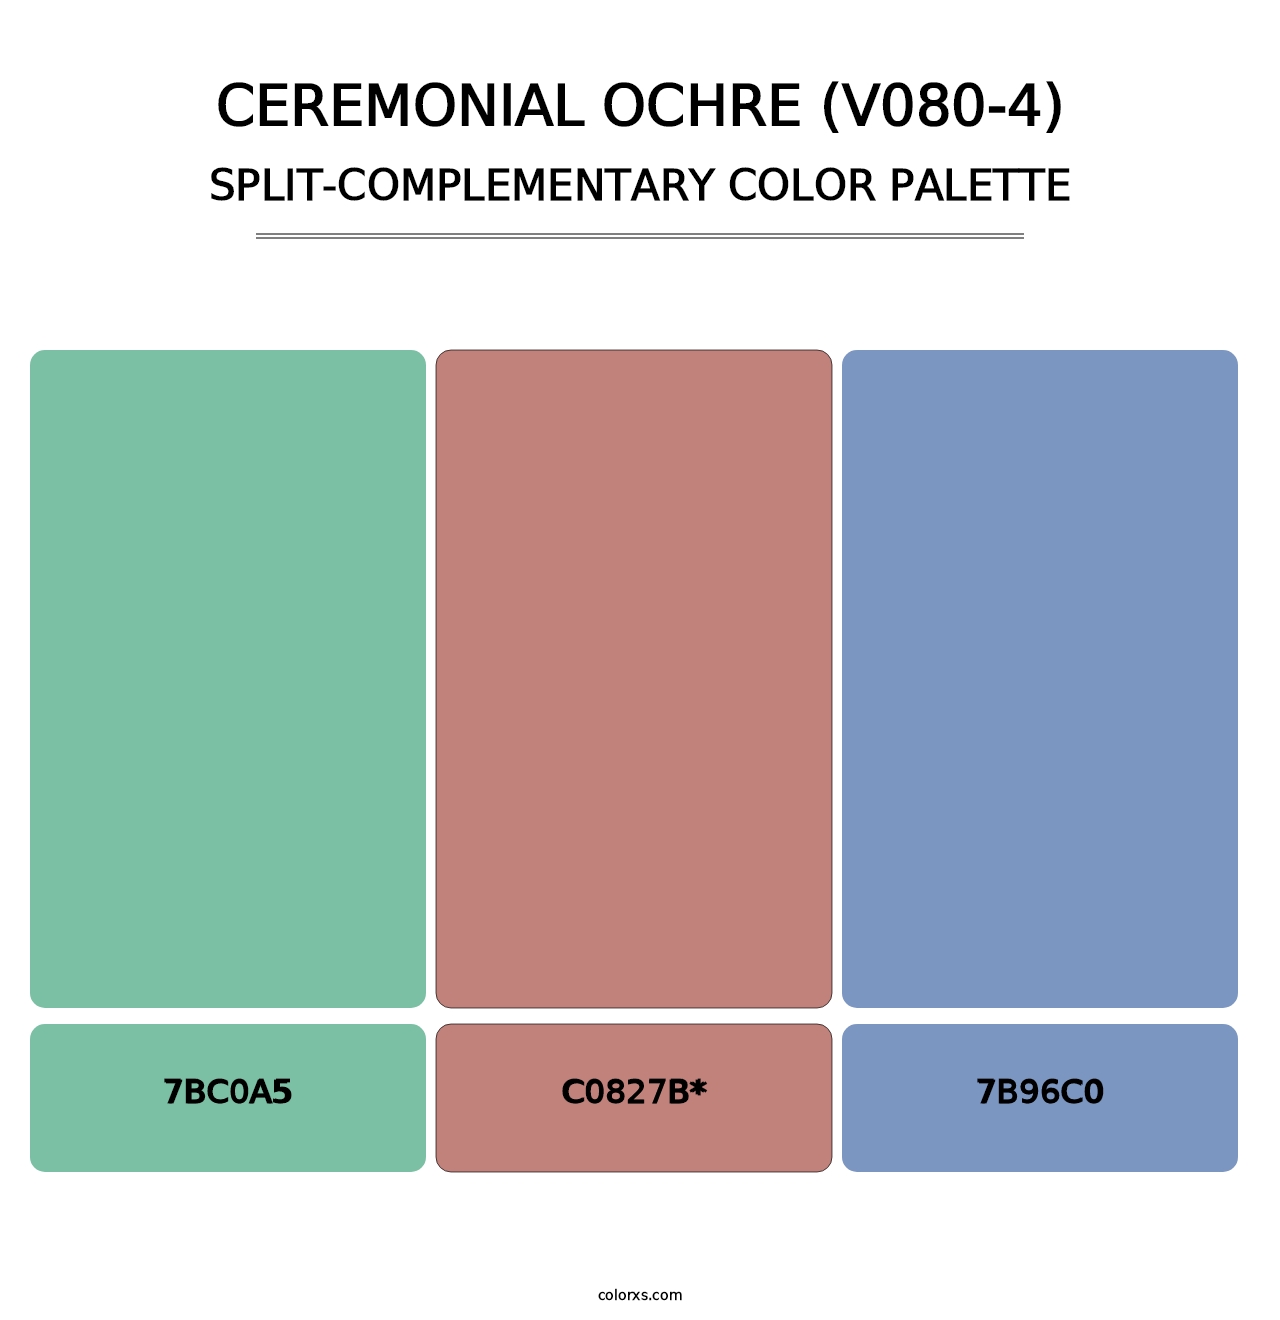 Ceremonial Ochre (V080-4) - Split-Complementary Color Palette